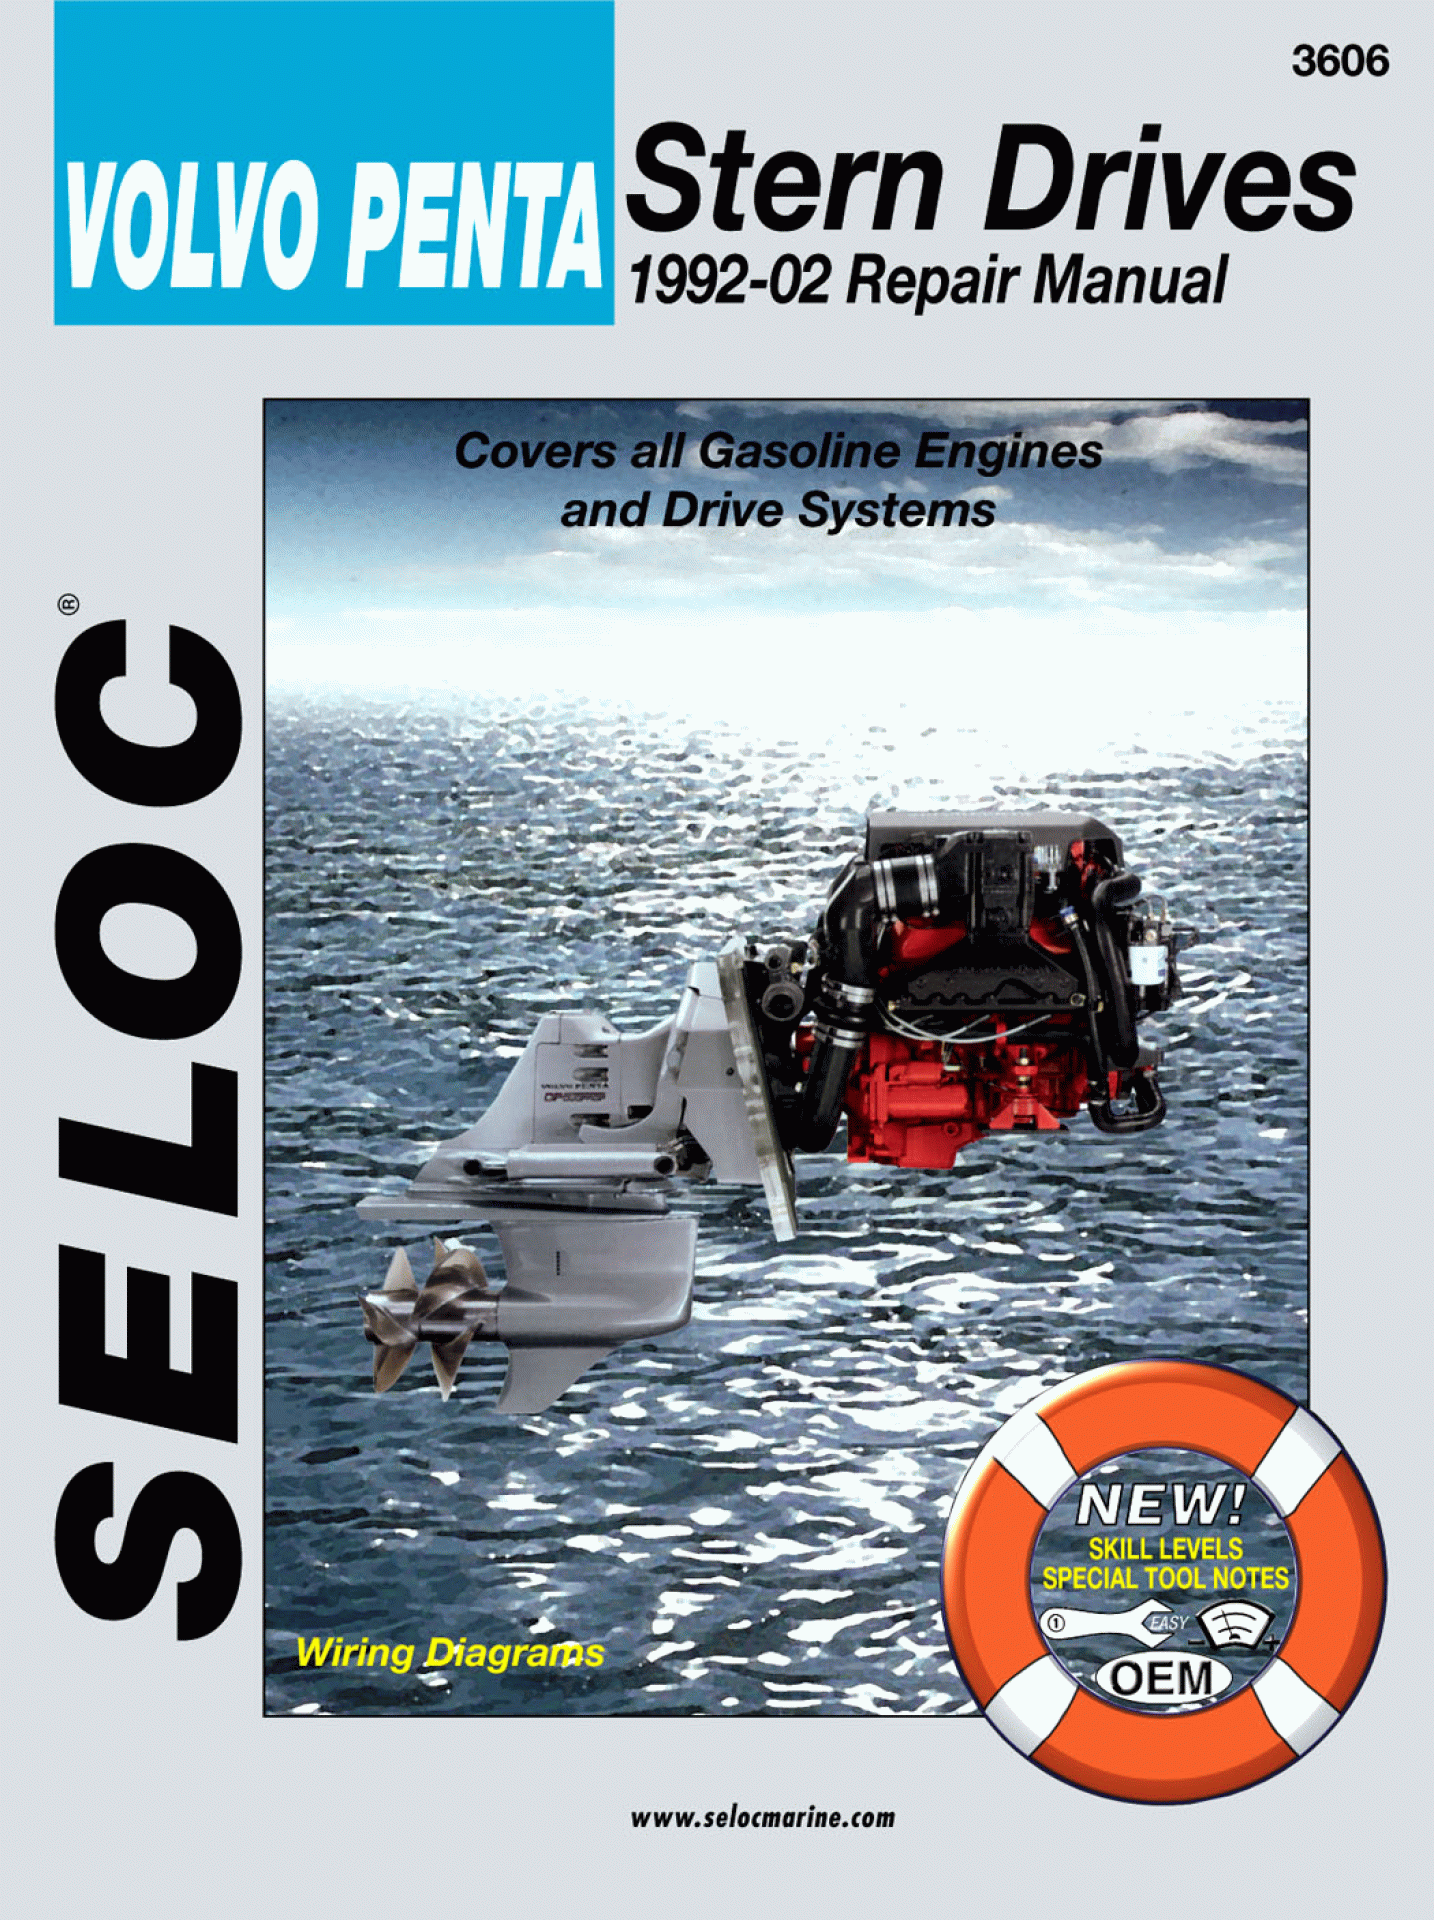 SELOC PUBLISHING | 18-03606 | REPAIR MANUAL Volvo Penta Stern Drive 1992-02